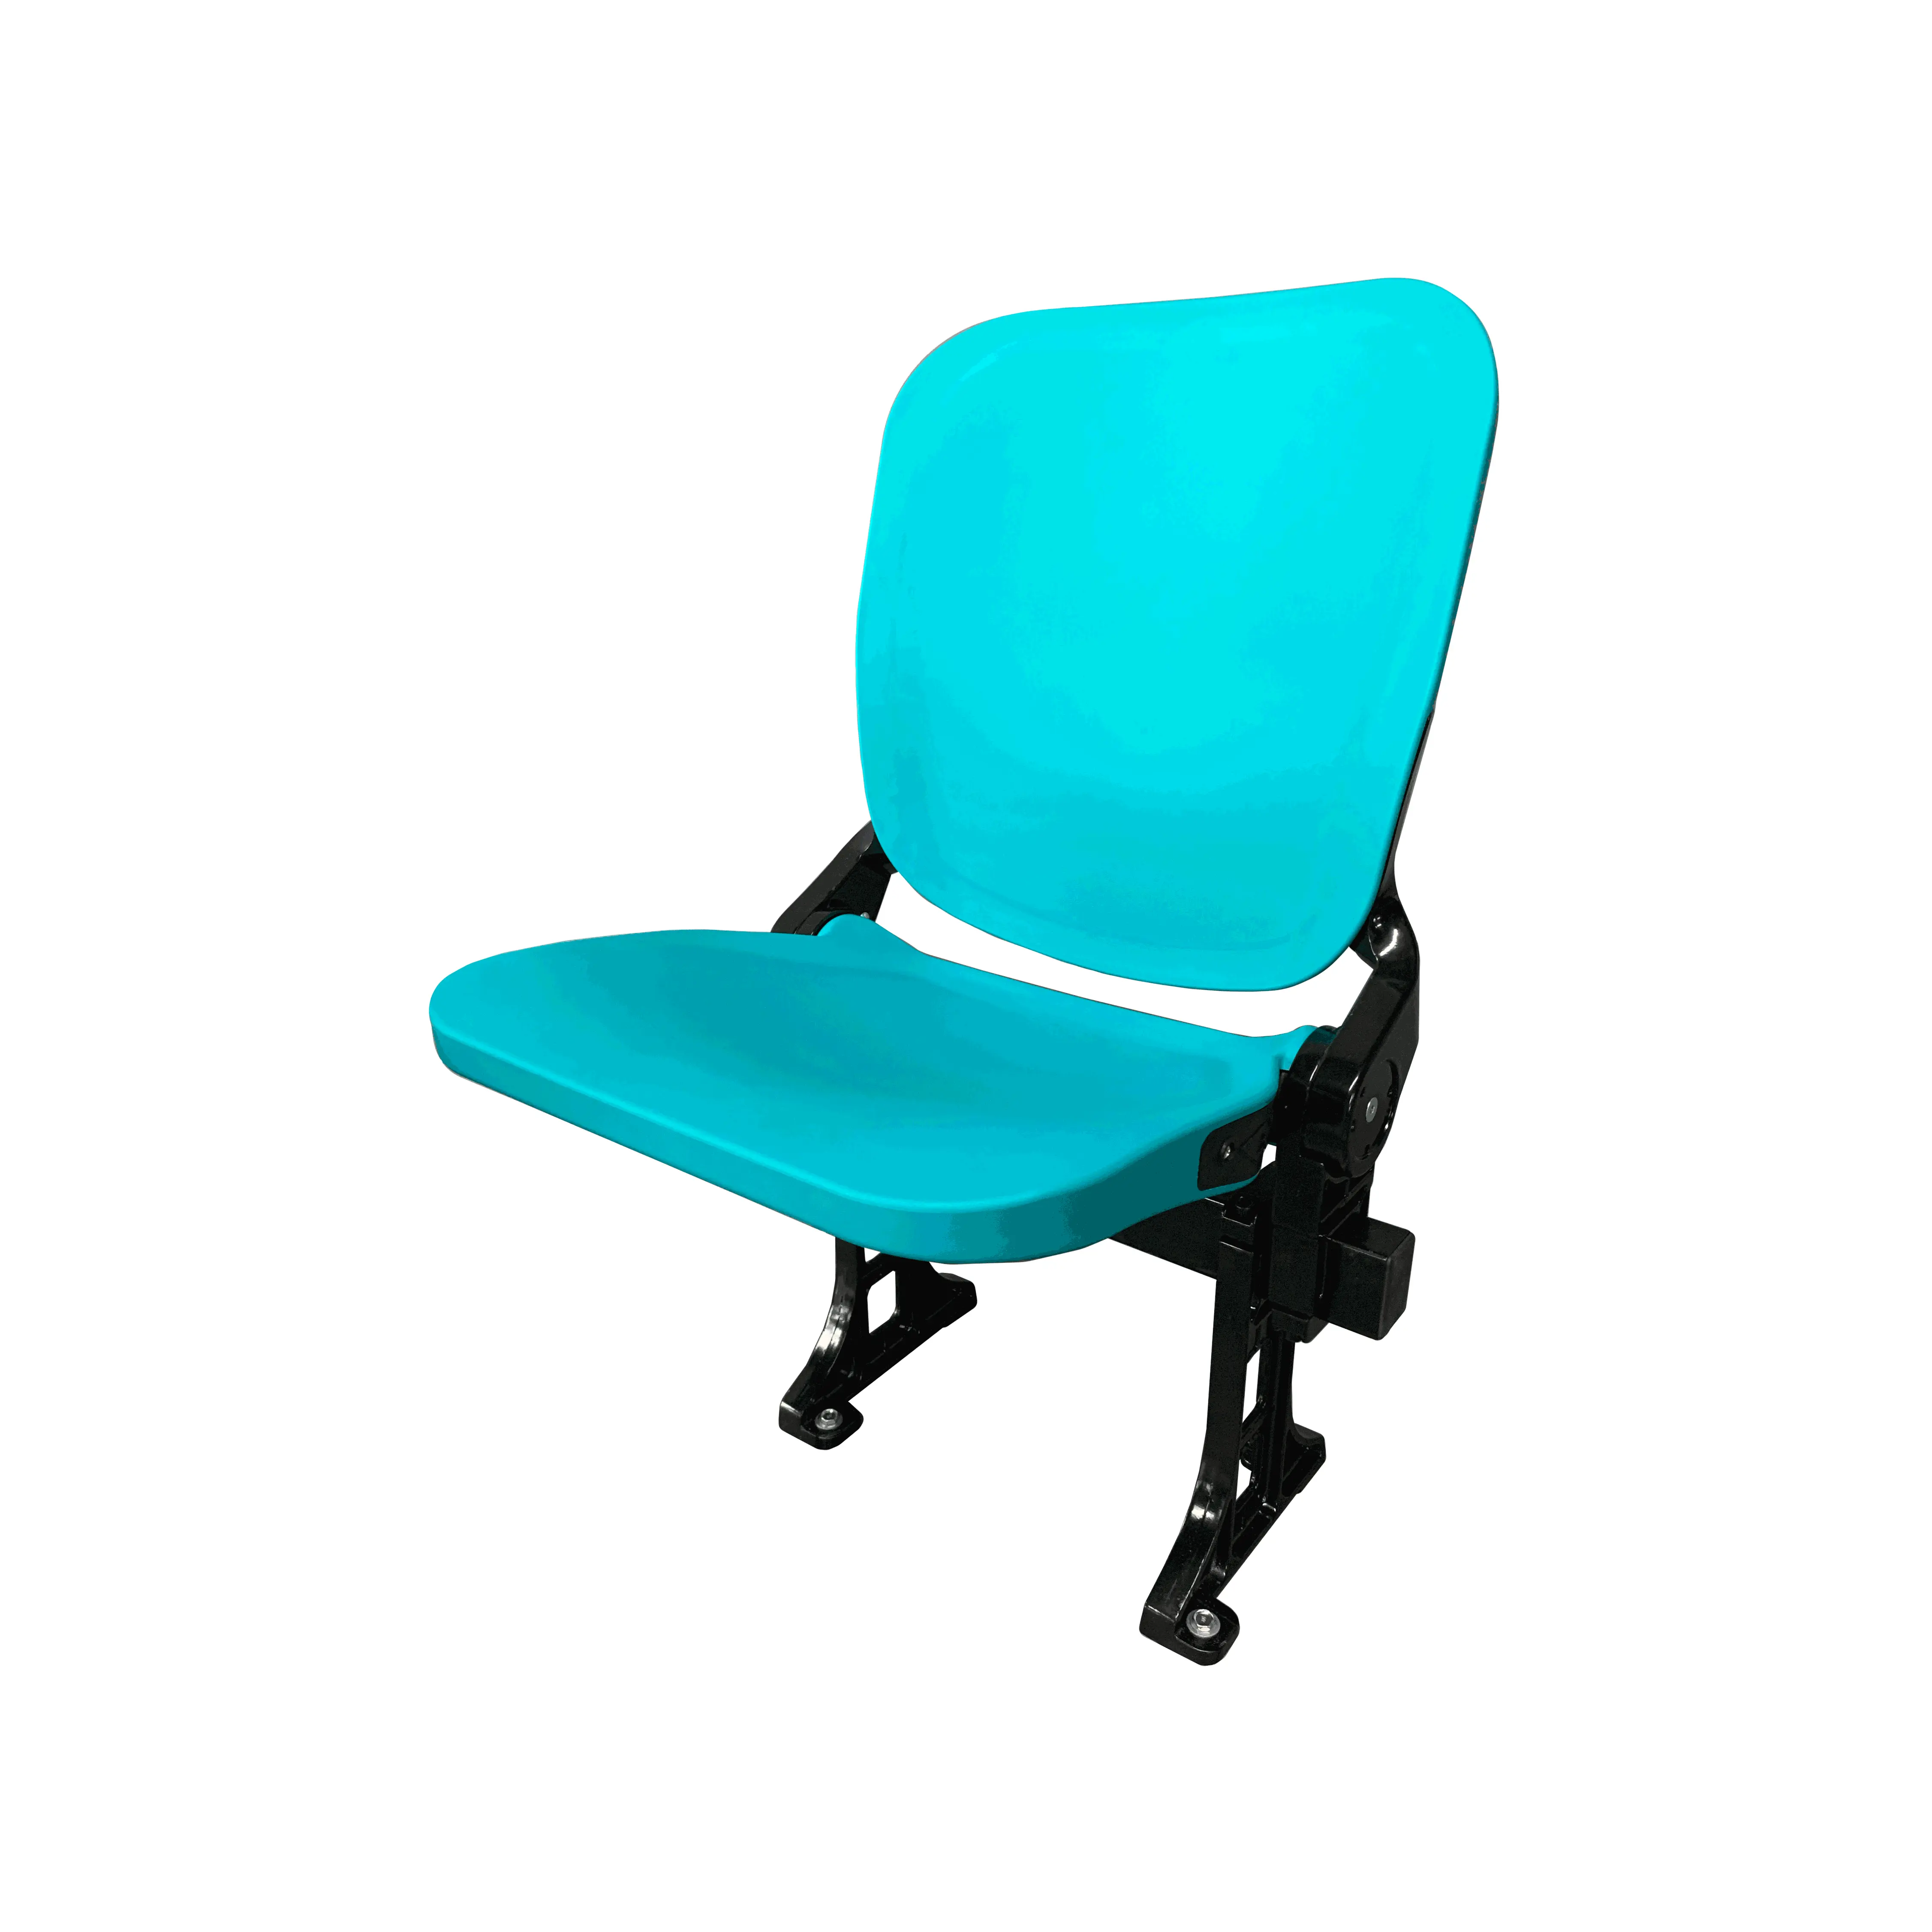 Tip up-asiento plegable de plástico PP de inyección asistida por gas, asiento acolchado de lujo para rezar, para gradas